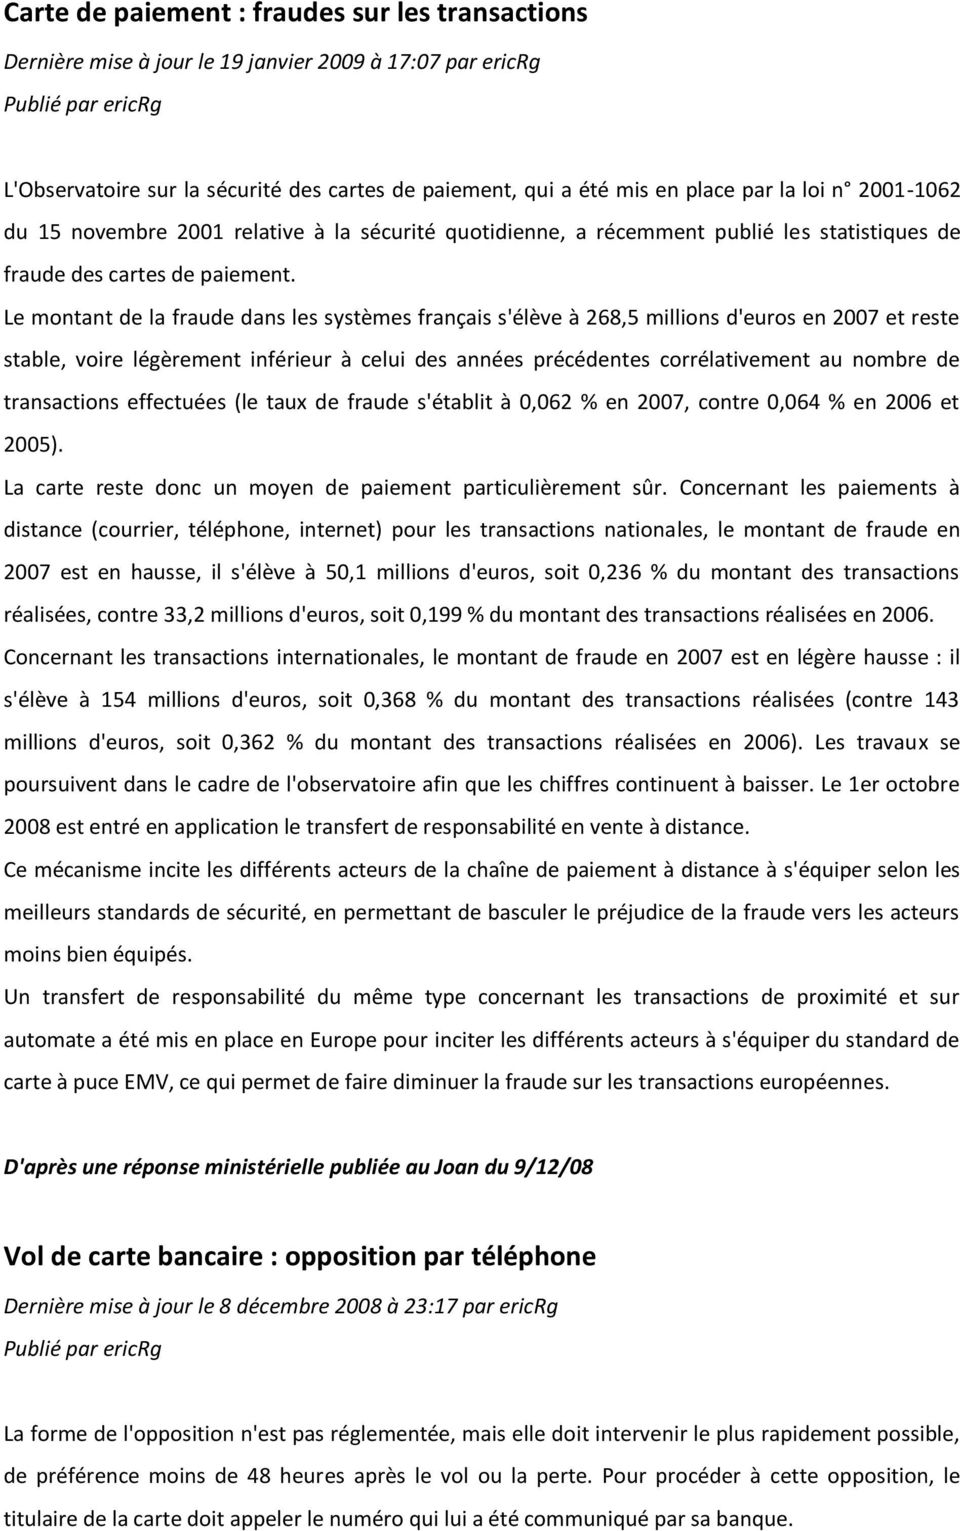 Le montant de la fraude dans les systèmes français s'élève à 268,5 millions d'euros en 2007 et reste stable, voire légèrement inférieur à celui des années précédentes corrélativement au nombre de